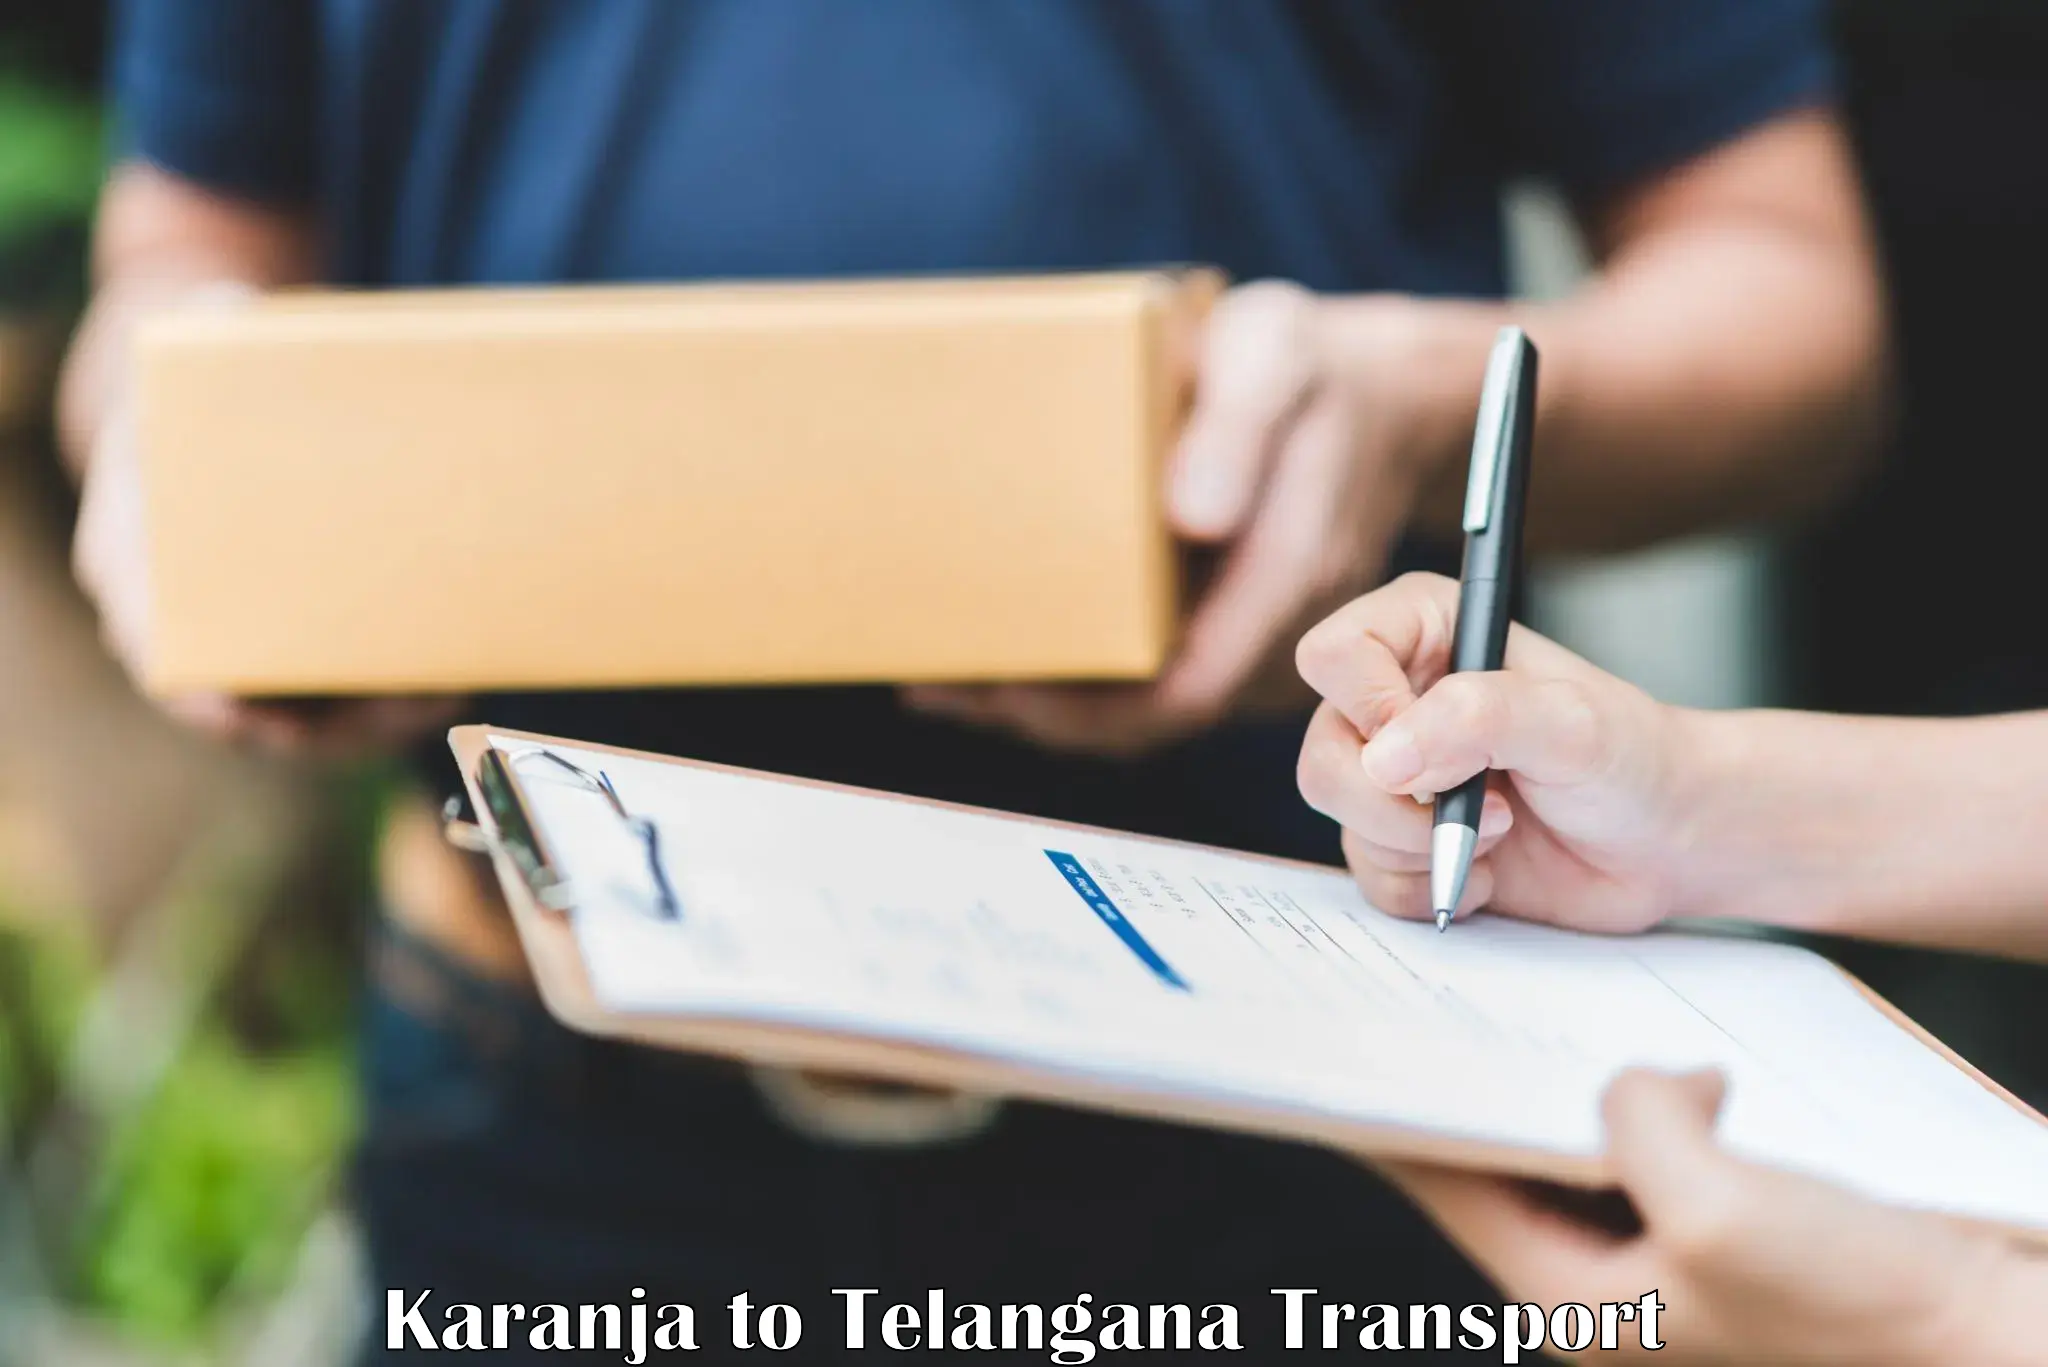 Road transport online services Karanja to Rayaparthi